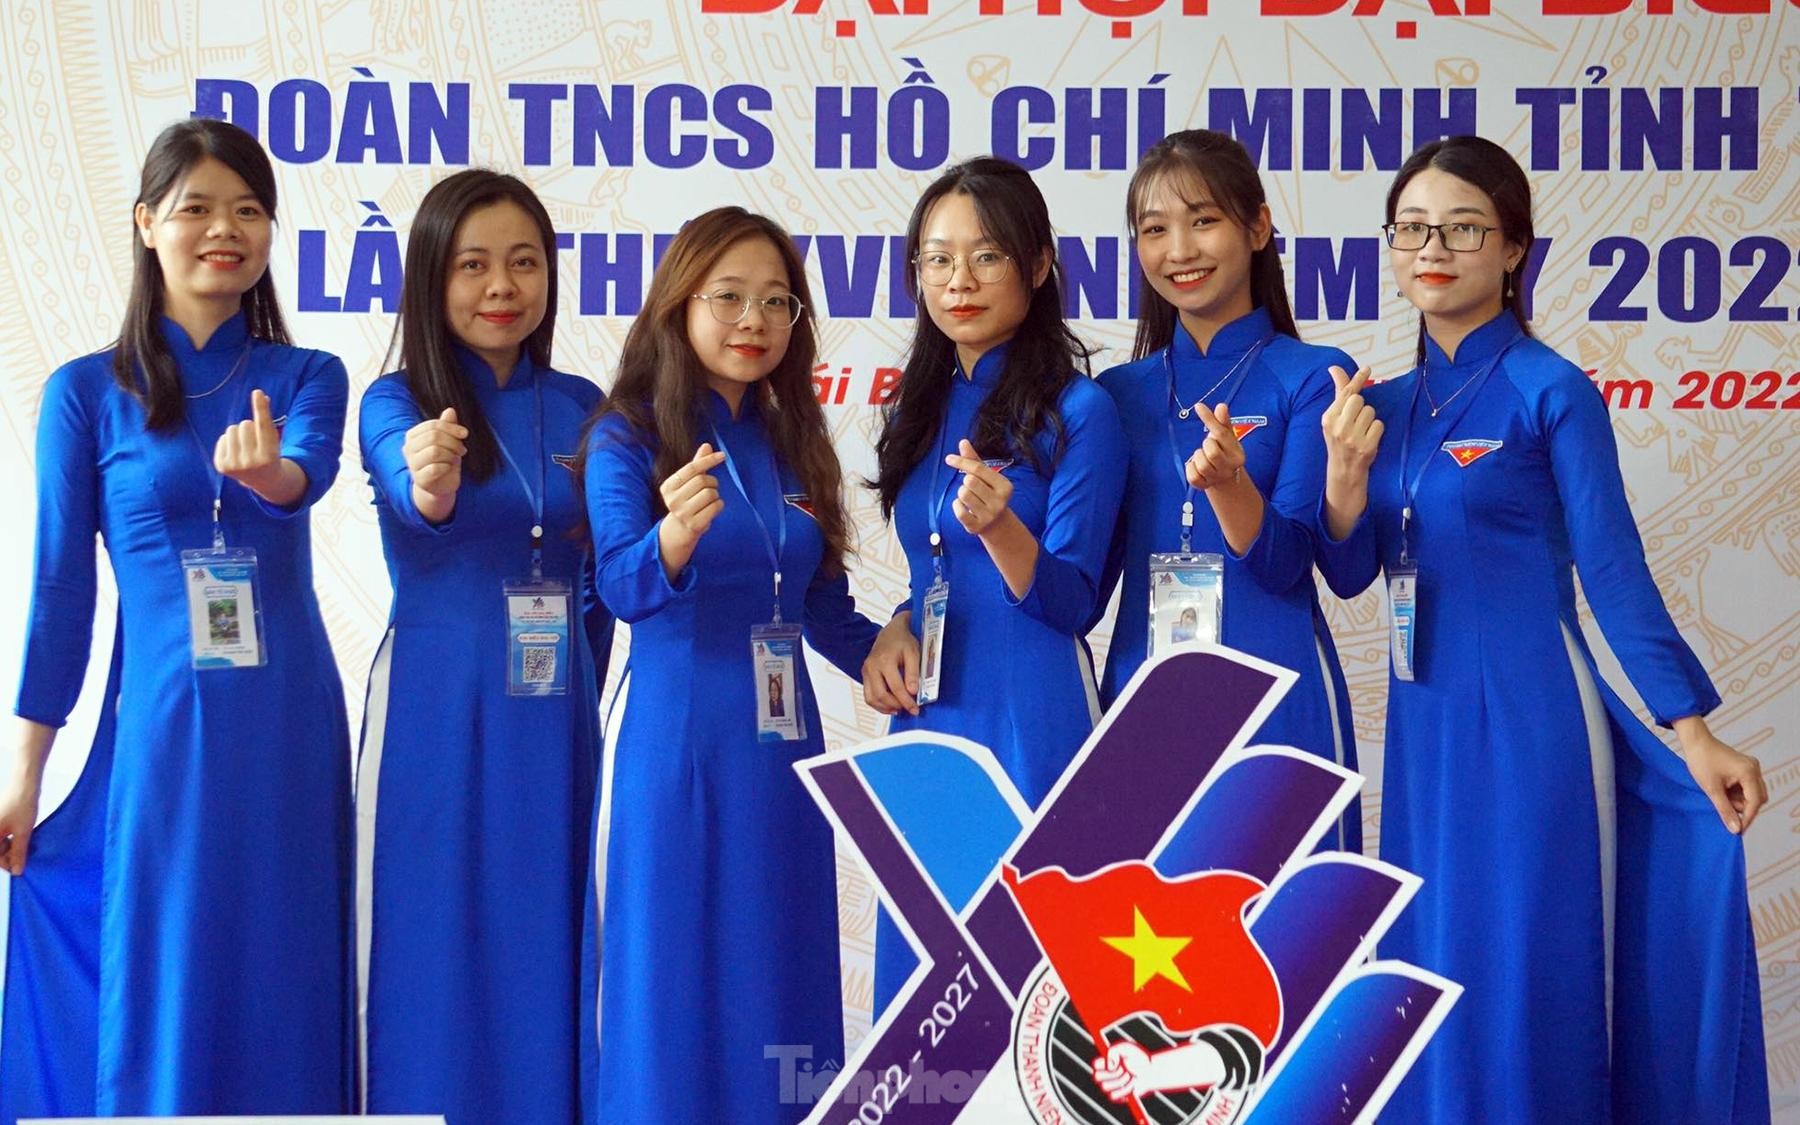 Toàn cảnh phiên khai mạc Đại hội Đoàn TNCS Hồ Chí Minh tỉnh Thái Bình ảnh 2